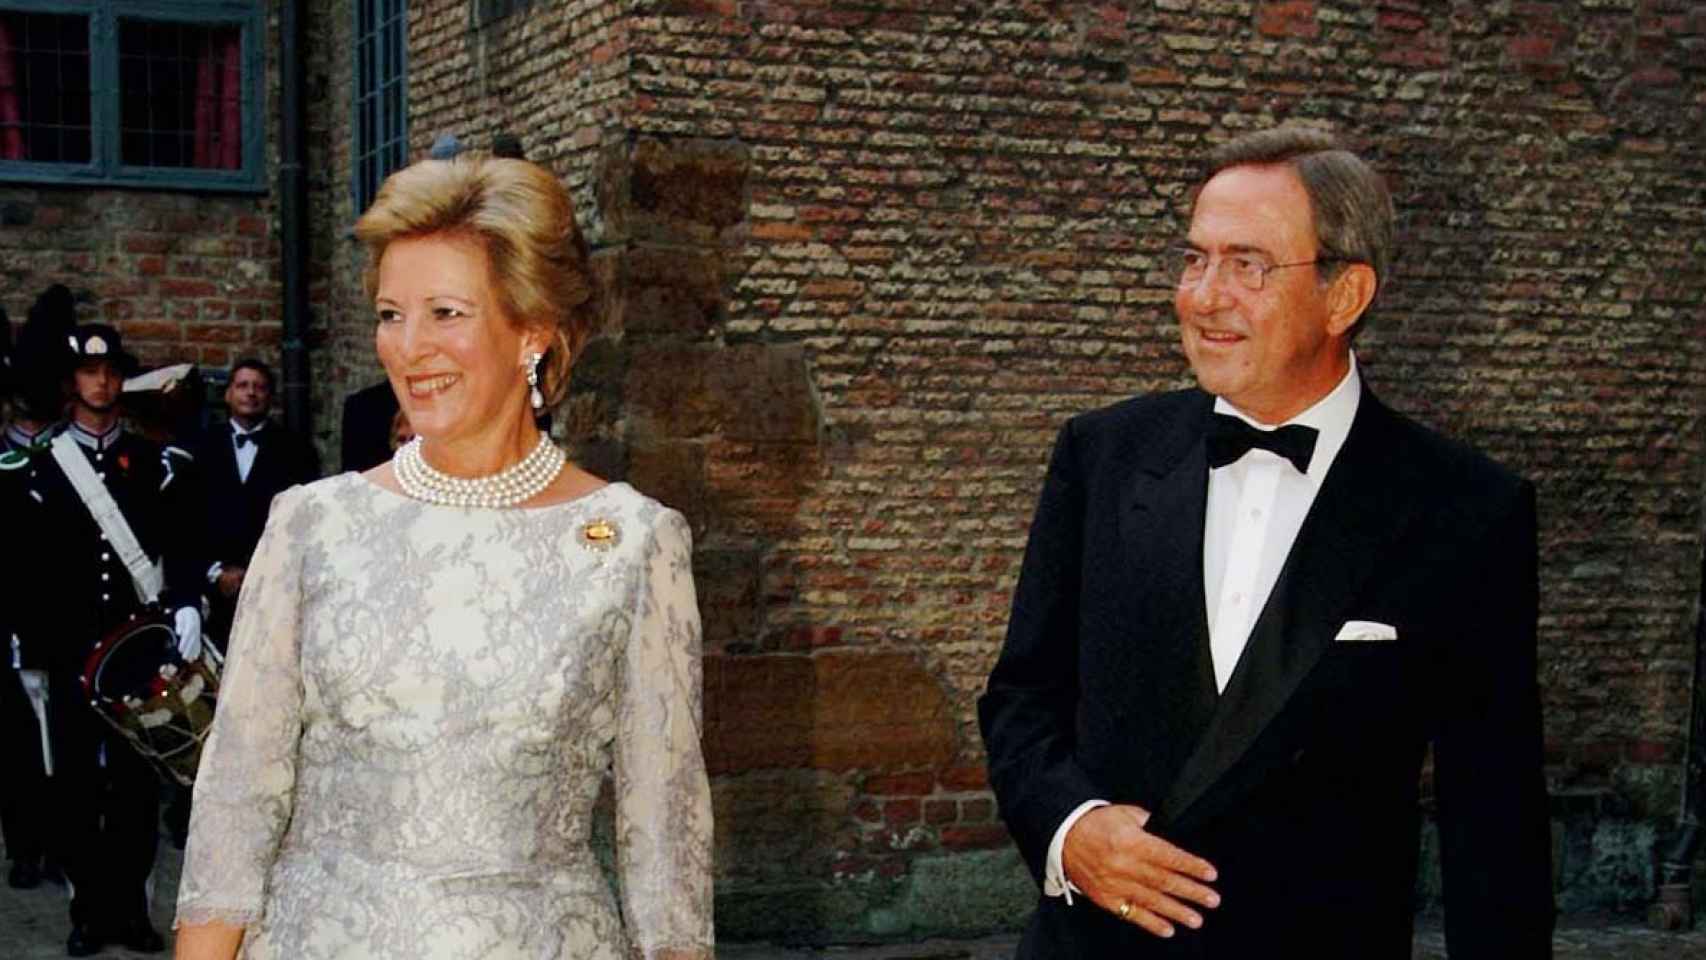 Los reyes de Grecia, Constantino II y Ana María, en una cena oficial en Noruega, en agosto de 2001.